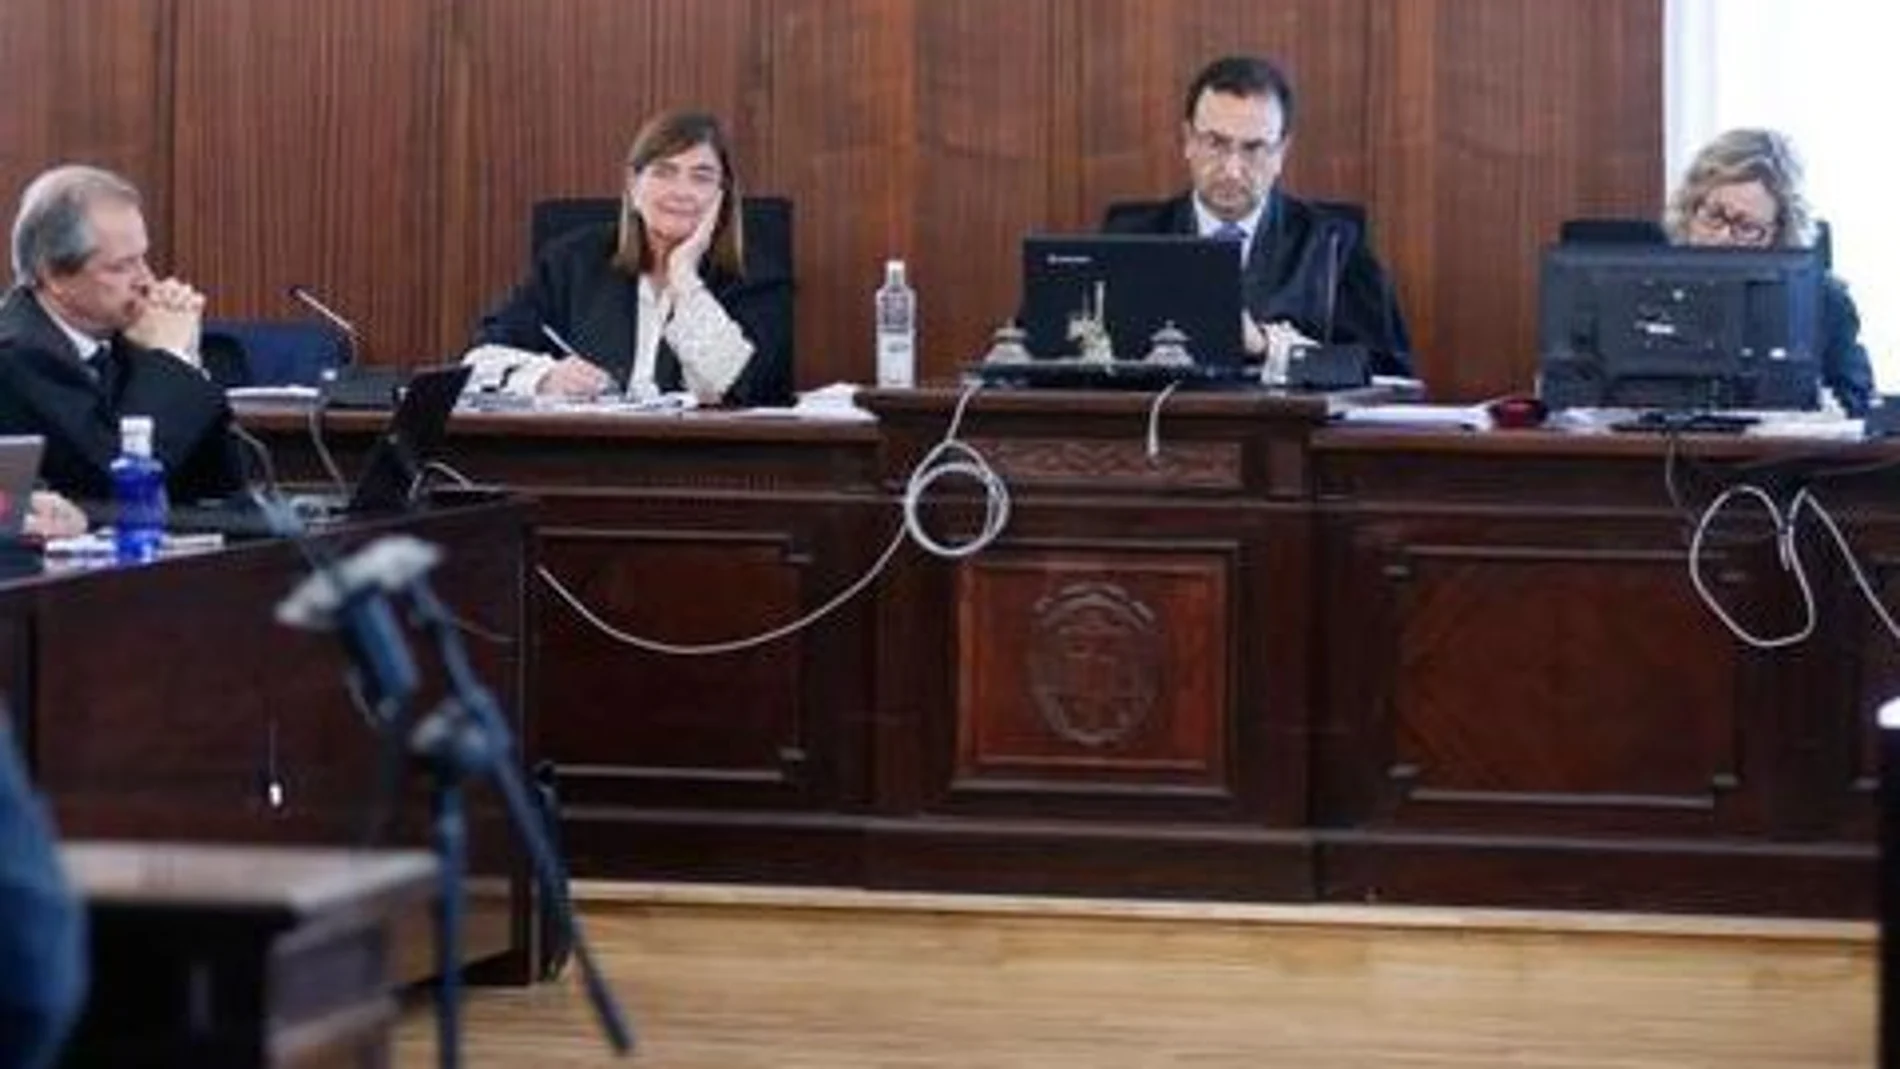 De izquierda a derecha, los magistrados Pilar Llorente, Juan Antonio Calle y Encarnación Gómez, durante el juicio del caso ERE en la Audiencia / Foto: Efe